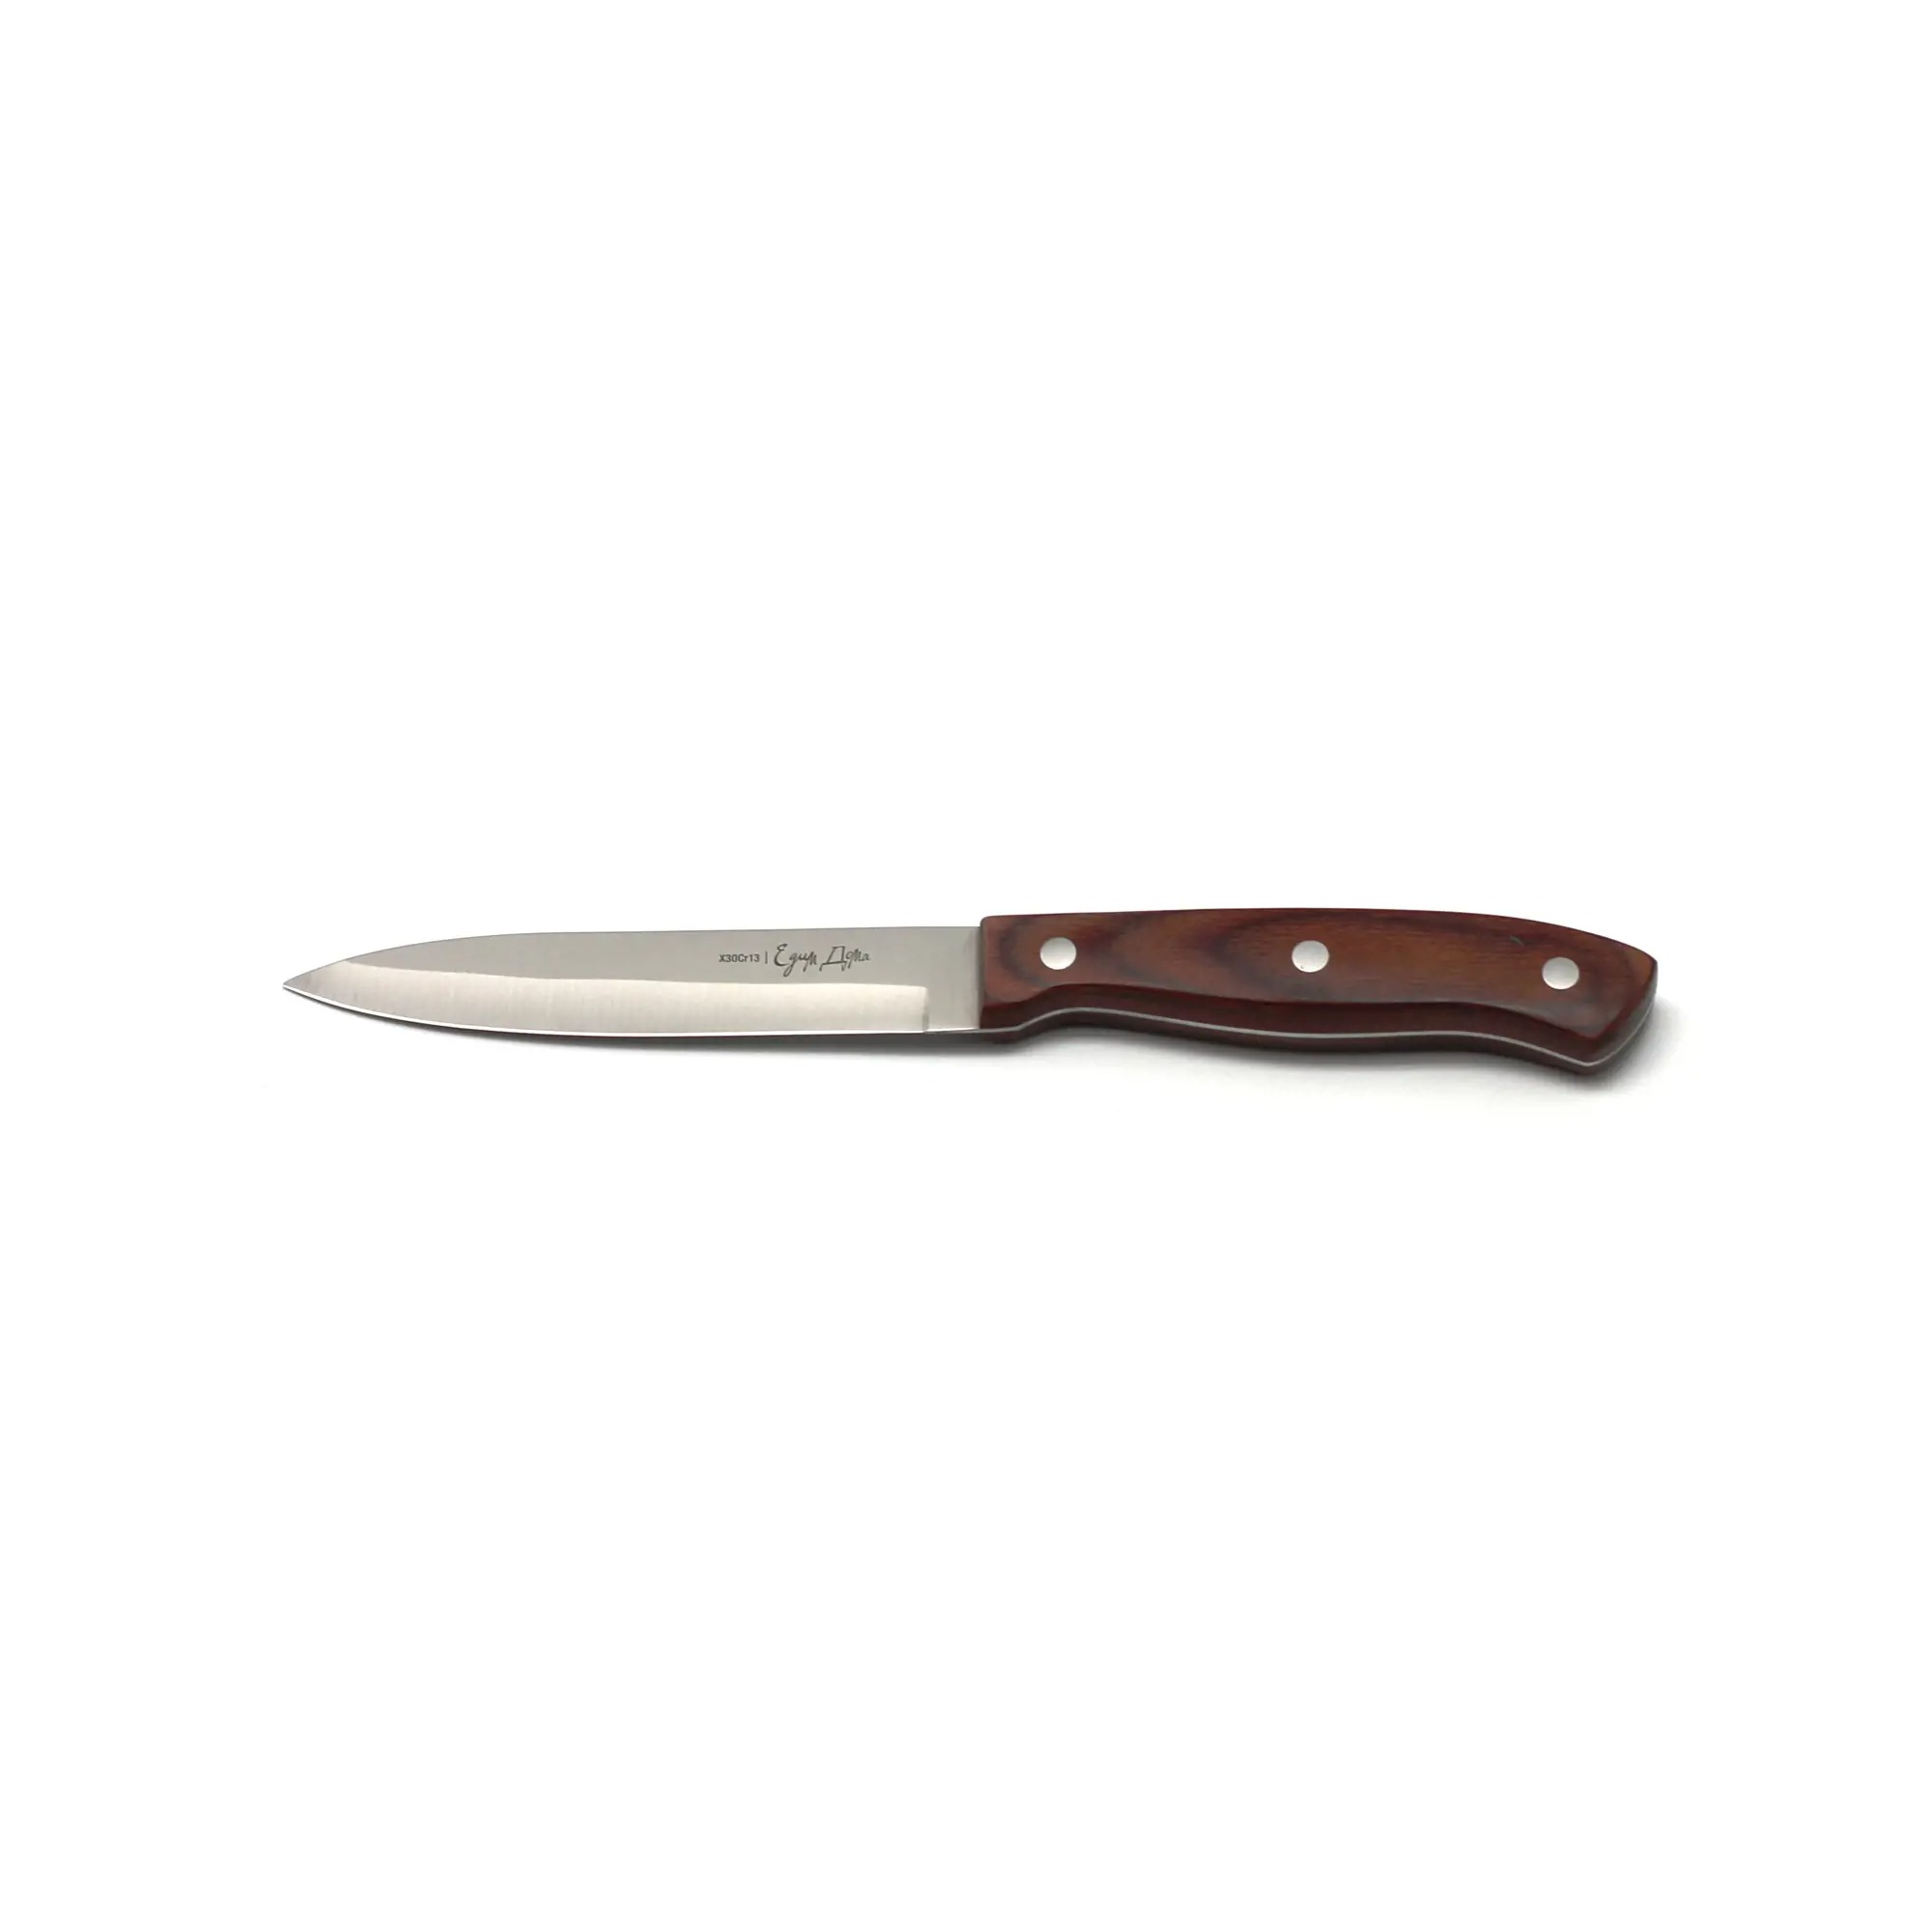 Нож универсальный Едим дома кухонный 12см листовой (ED-408) нож овощной едим дома 9см листовой ed 410